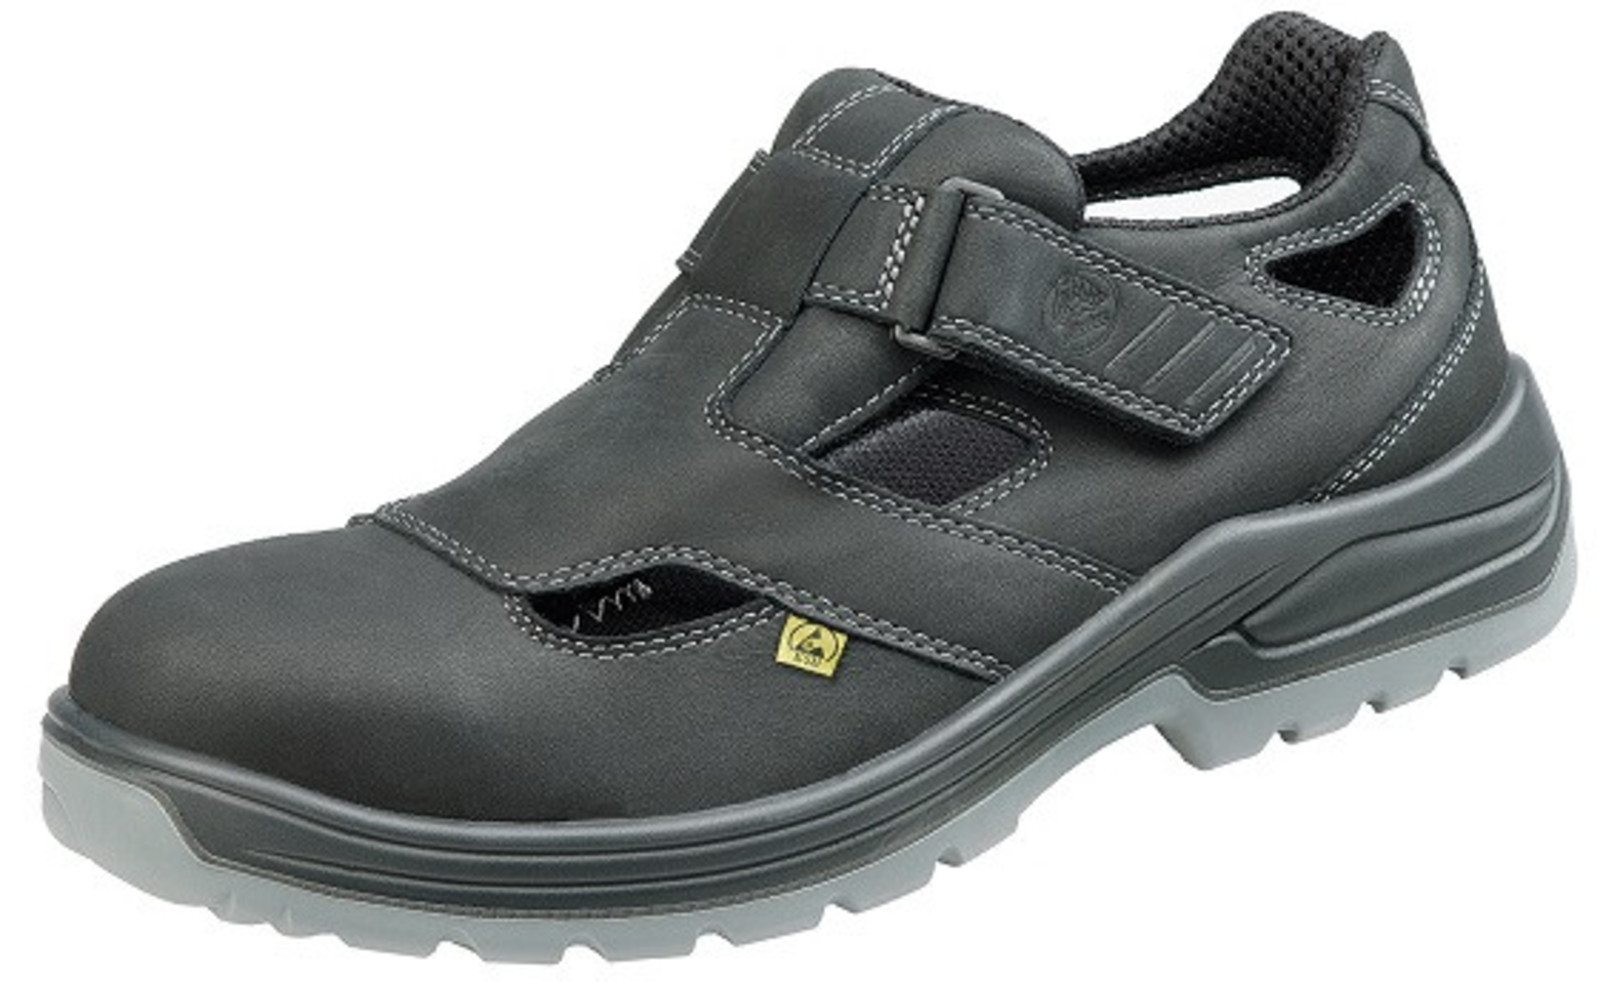 Bezpečnostné sandále Baťa Helsinki S1 - veľkosť: 48, farba: čierna